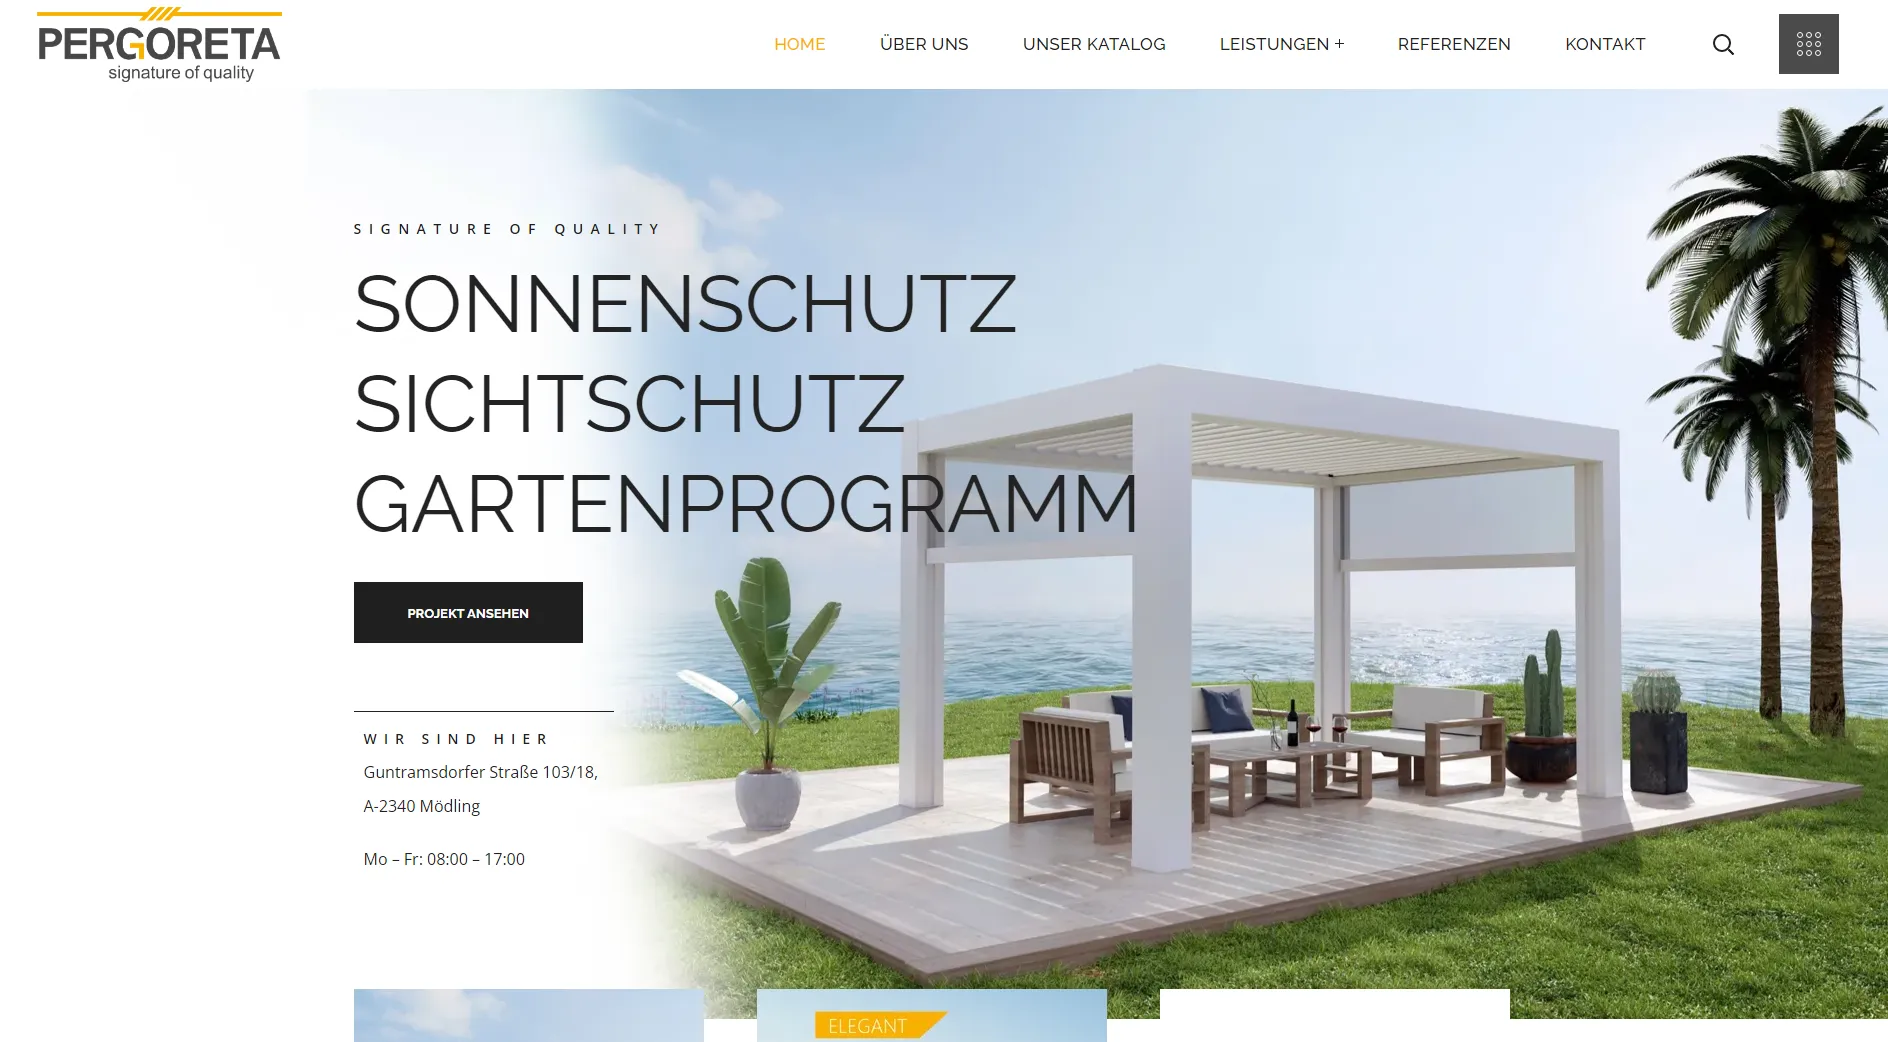 Webdesign für Pergoreta GmbH